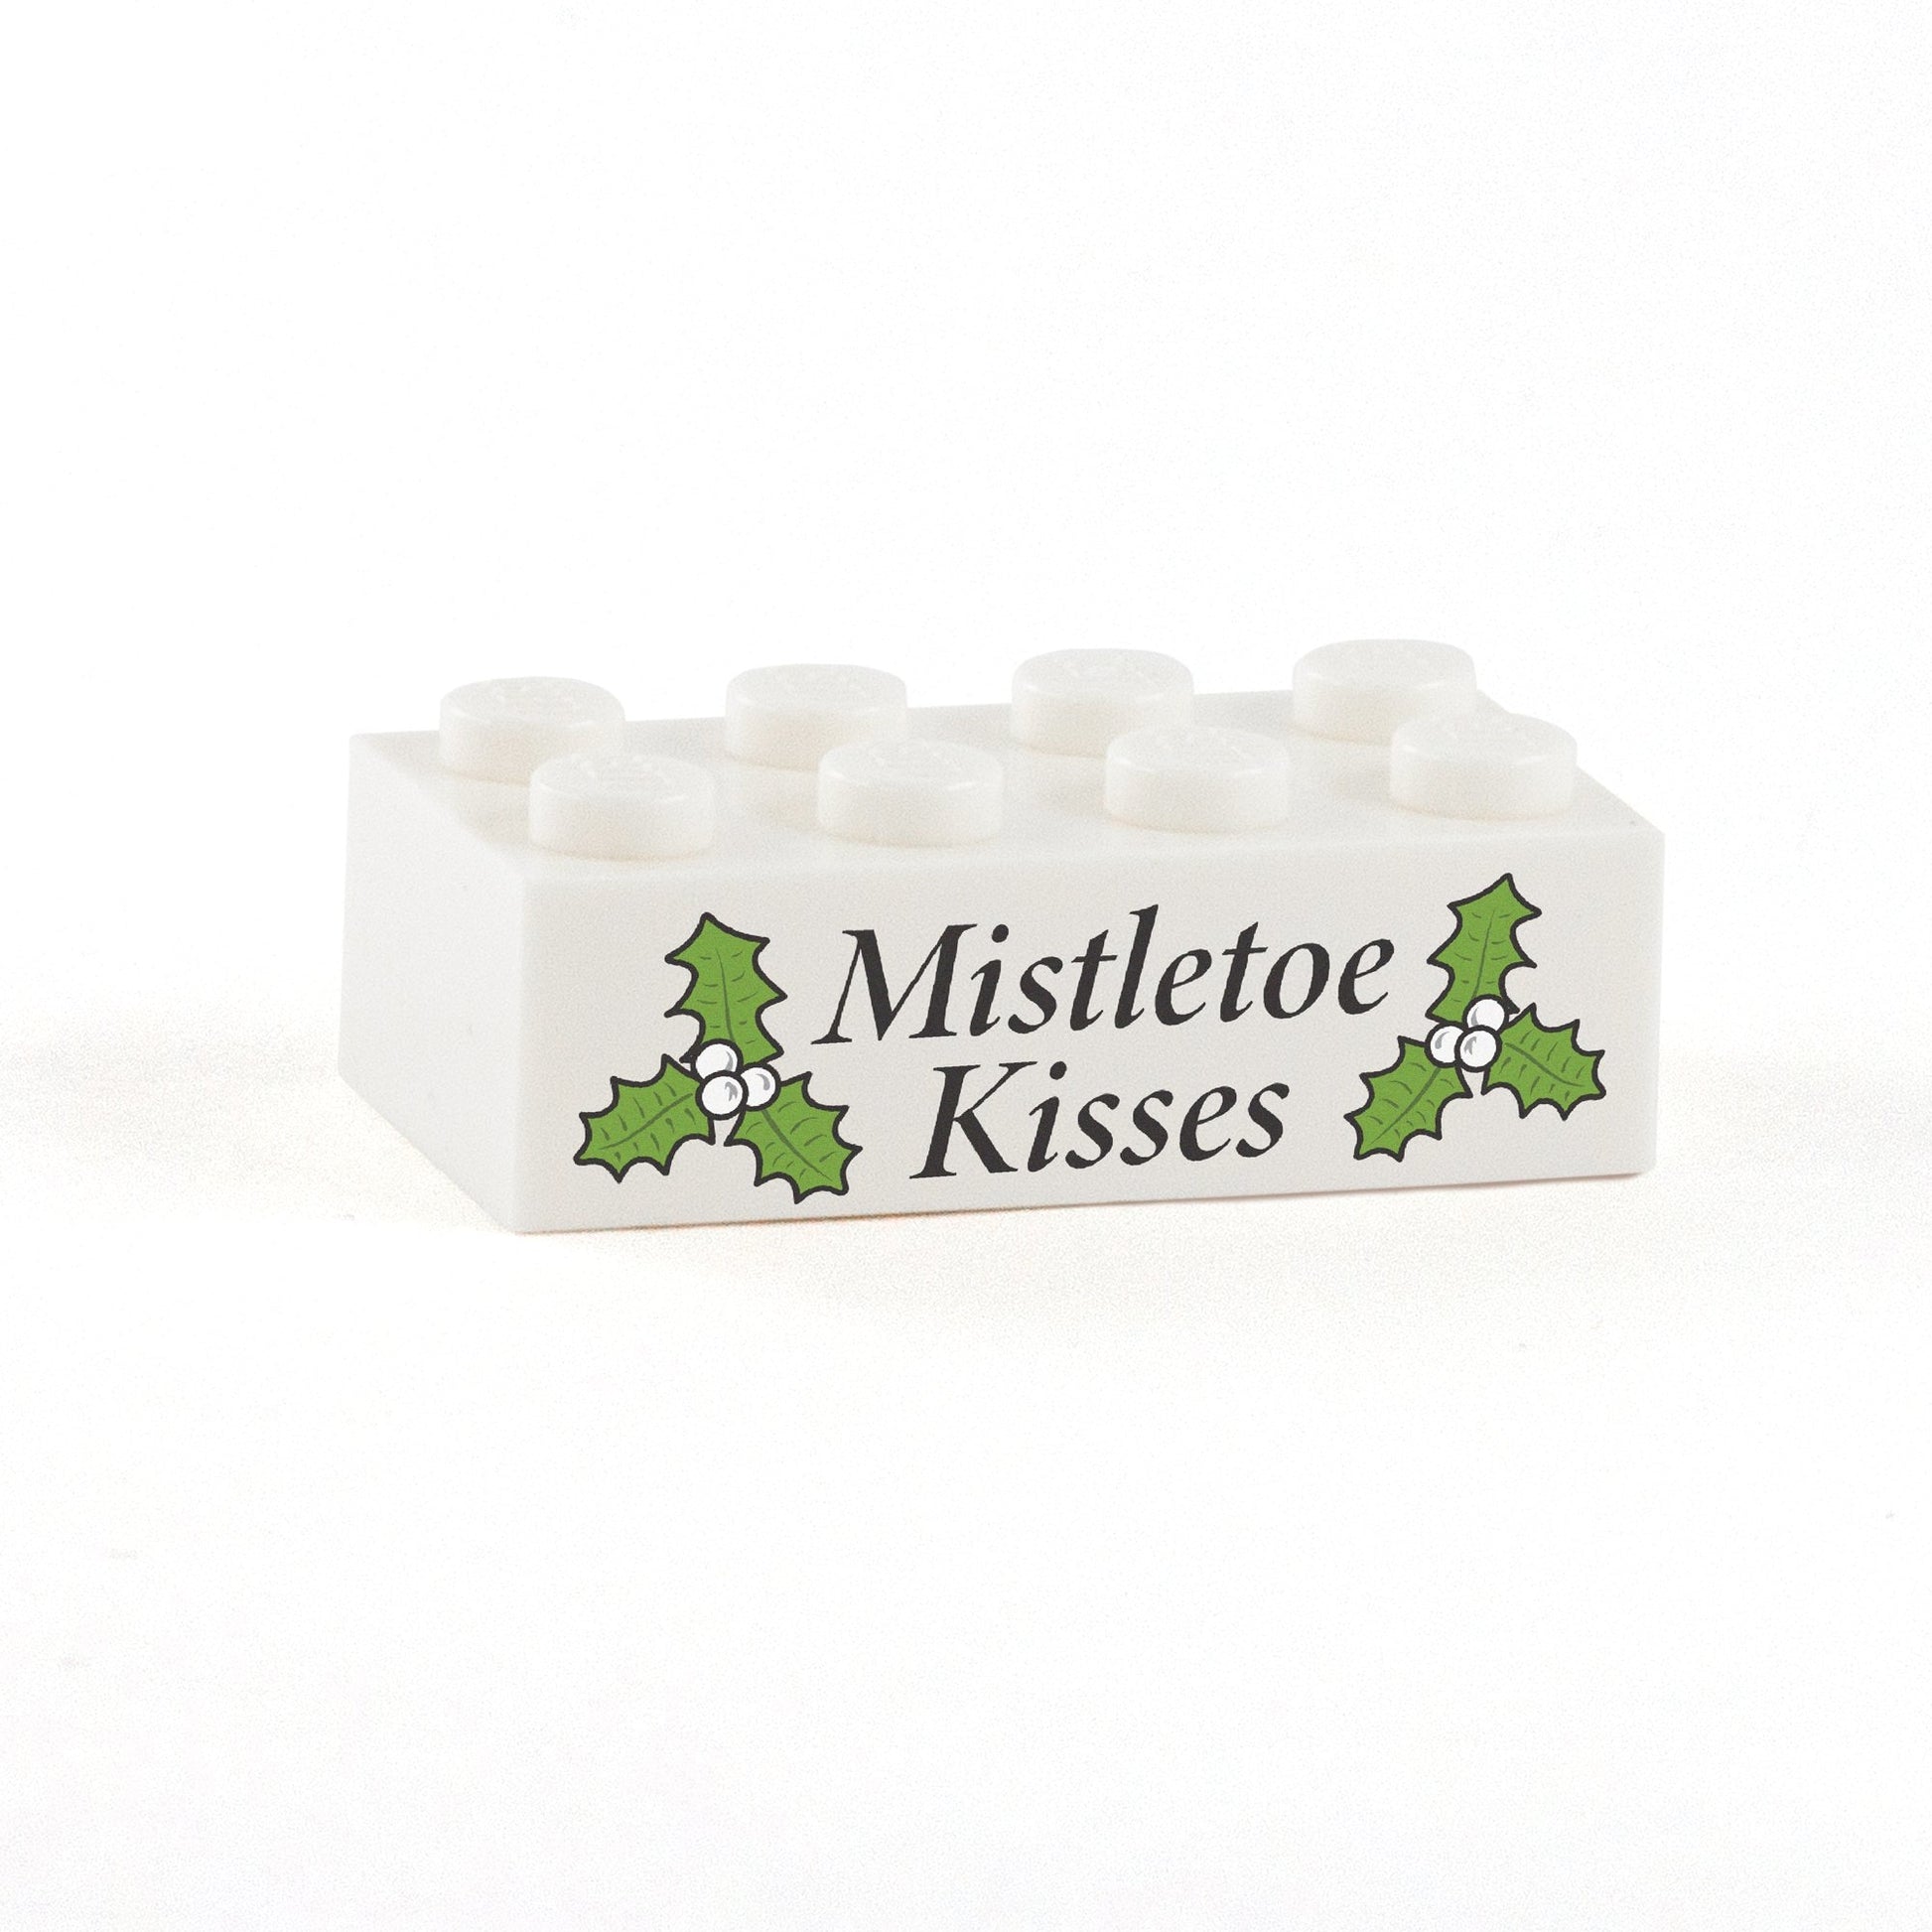 Mistletoe Kisses Display Brick - Custom Printed 2x4 LEGO Brick